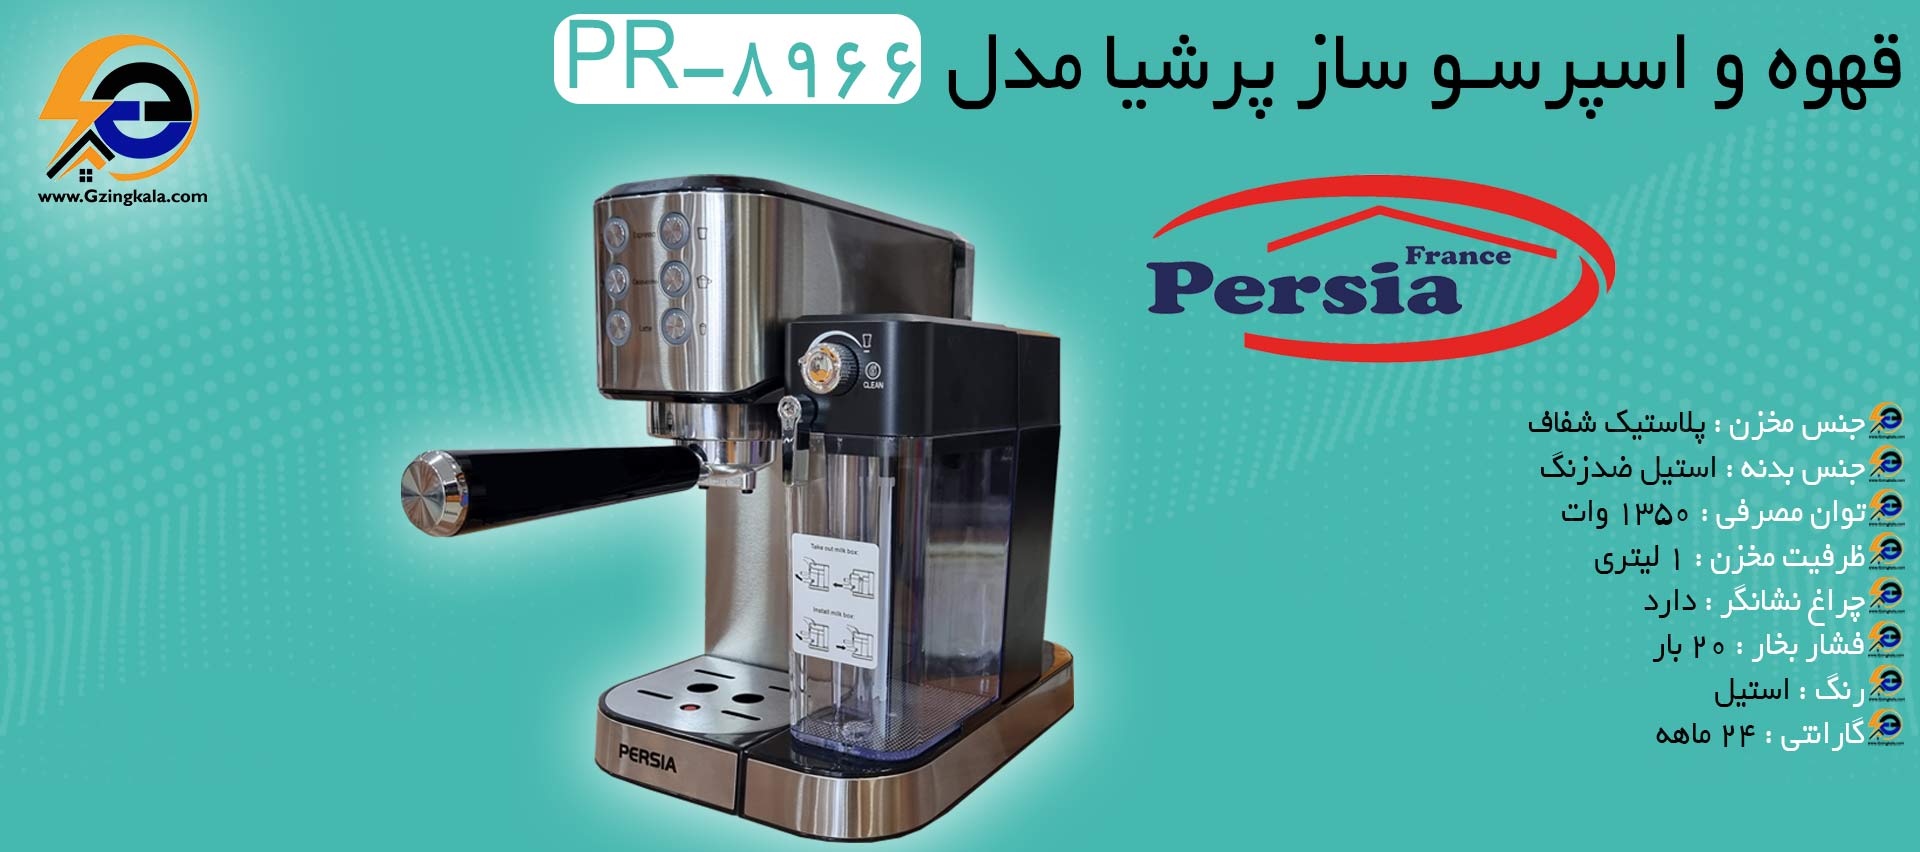 قهوه و اسپرسو ساز پرشیا مدل PR-8966